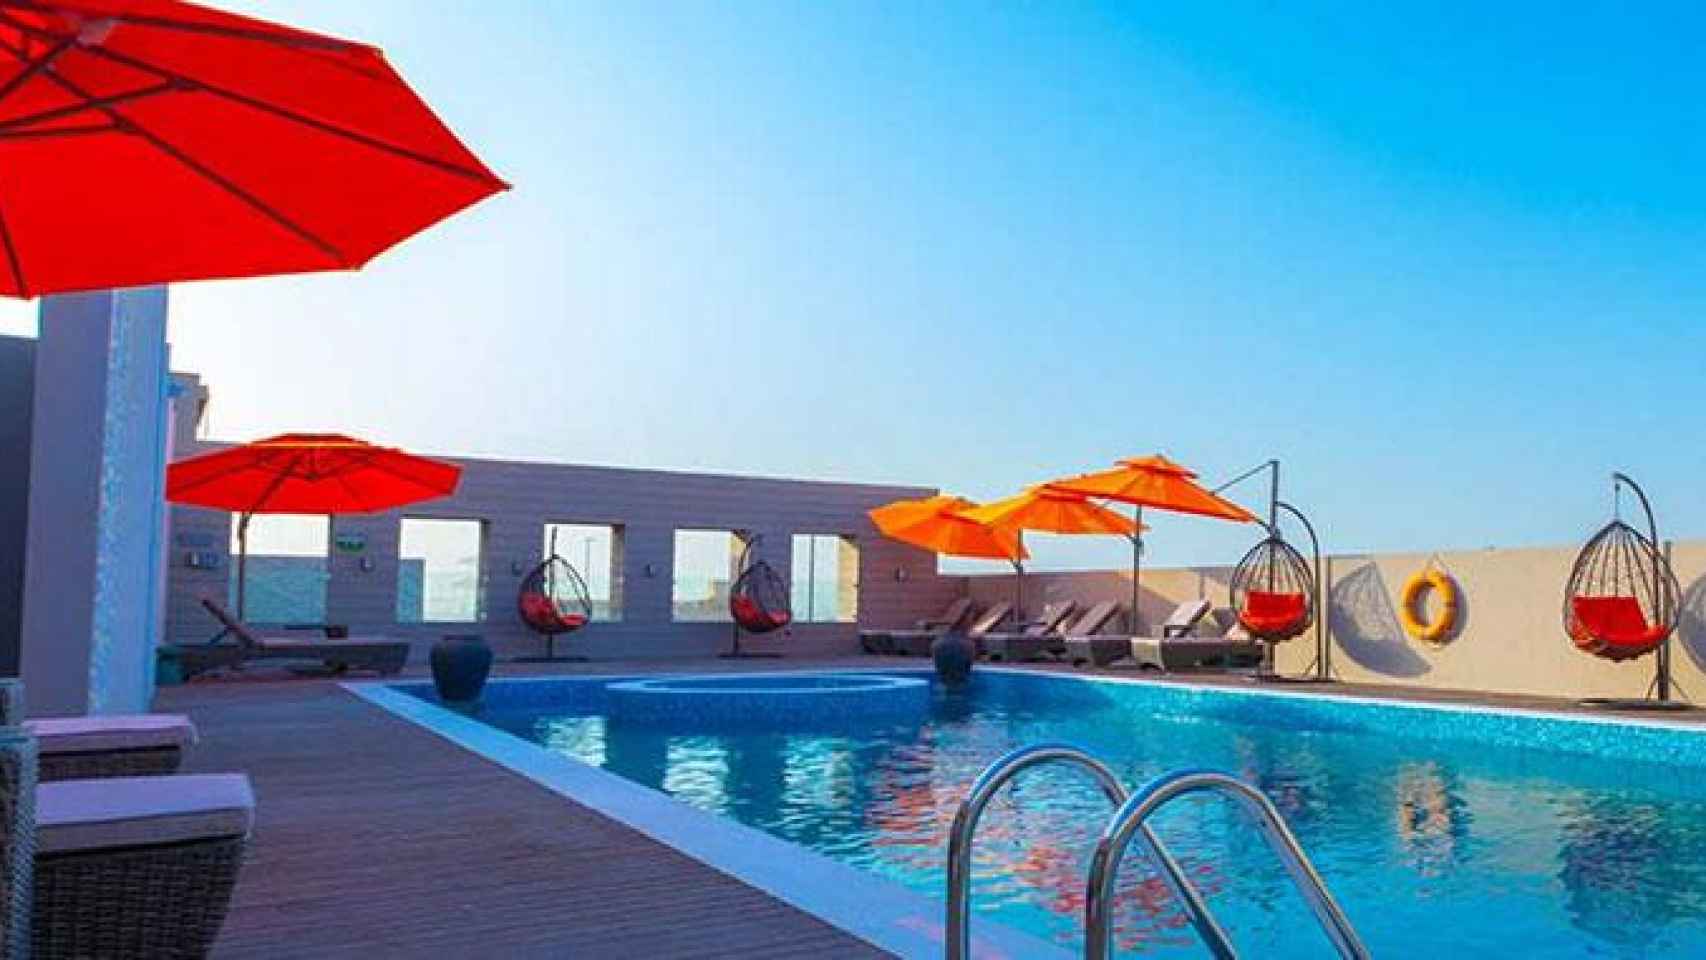 La piscina del nuevo hotel Barceló en Emiratos Árabes Unidos / CG